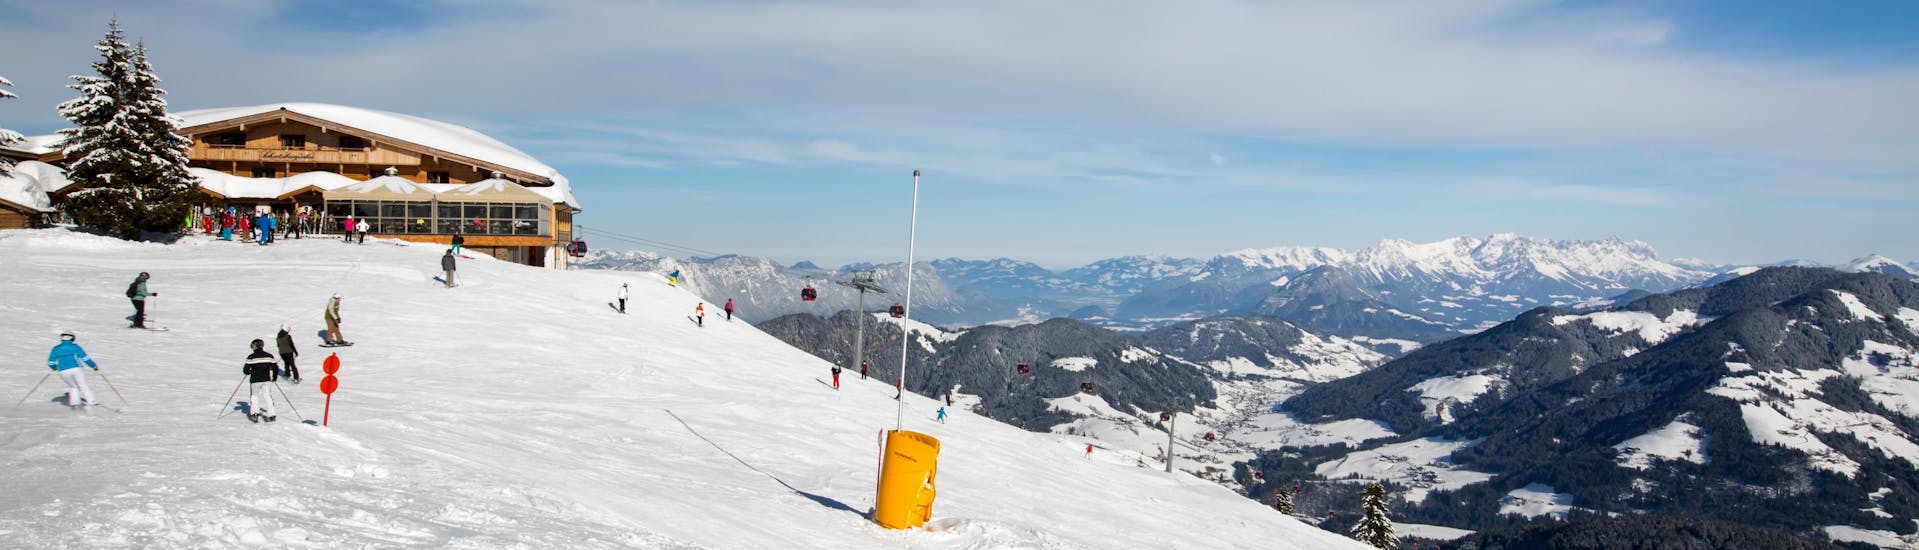 Tijdens een skiles met een skischool in Ski Juwel Alpbachtal Wildschönau heb je een prachtig uitzicht op zonnige bergen.